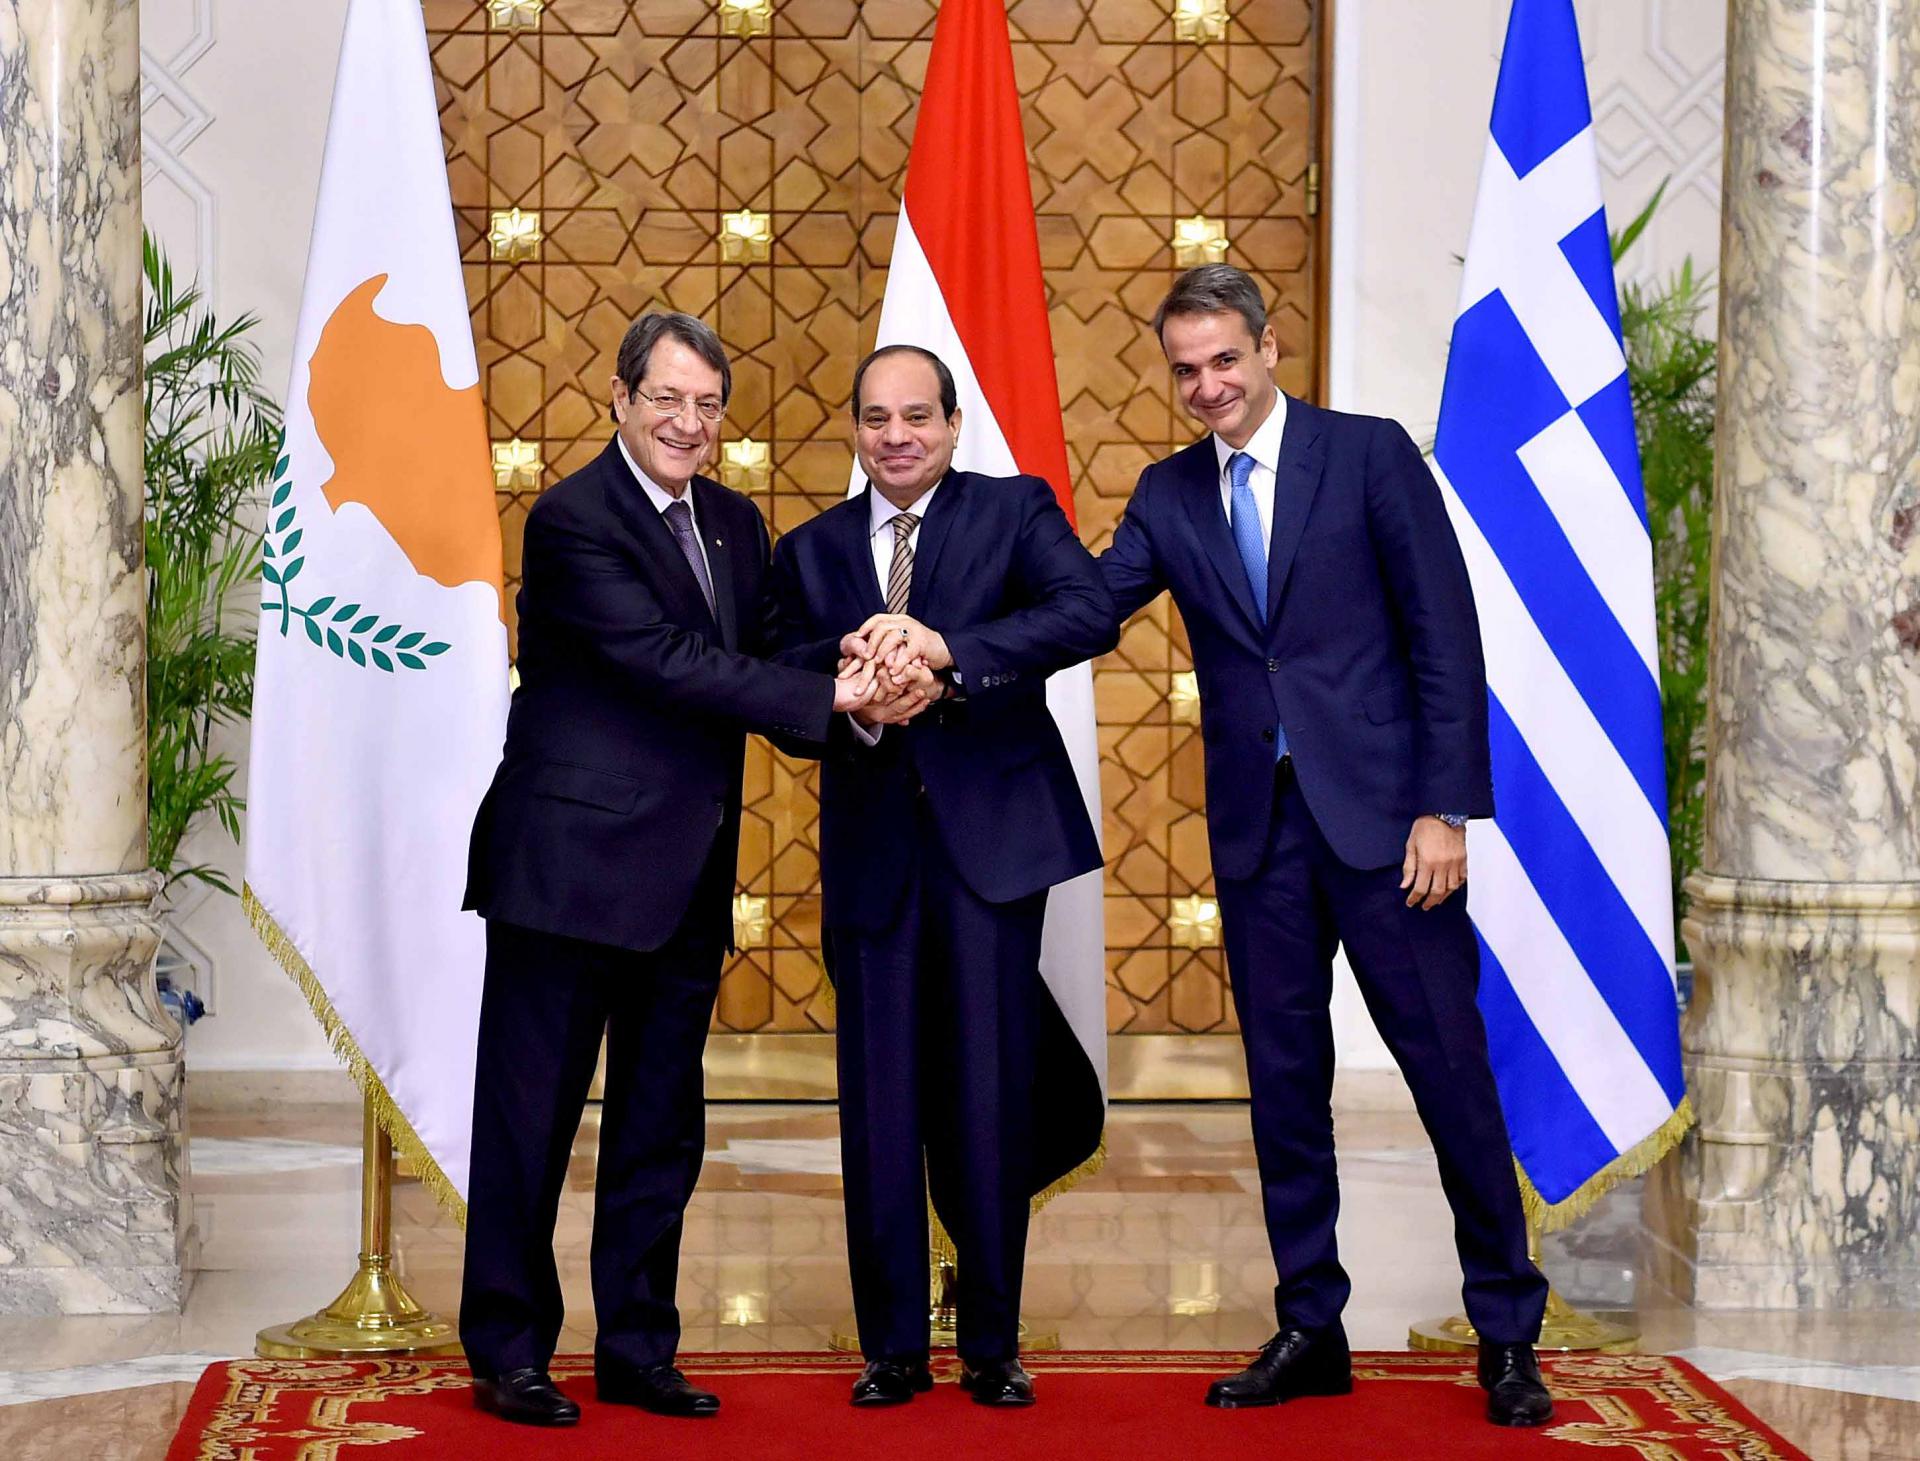 اليونان ومصر وقبرص يد واحدة ضد التهديدات التركية